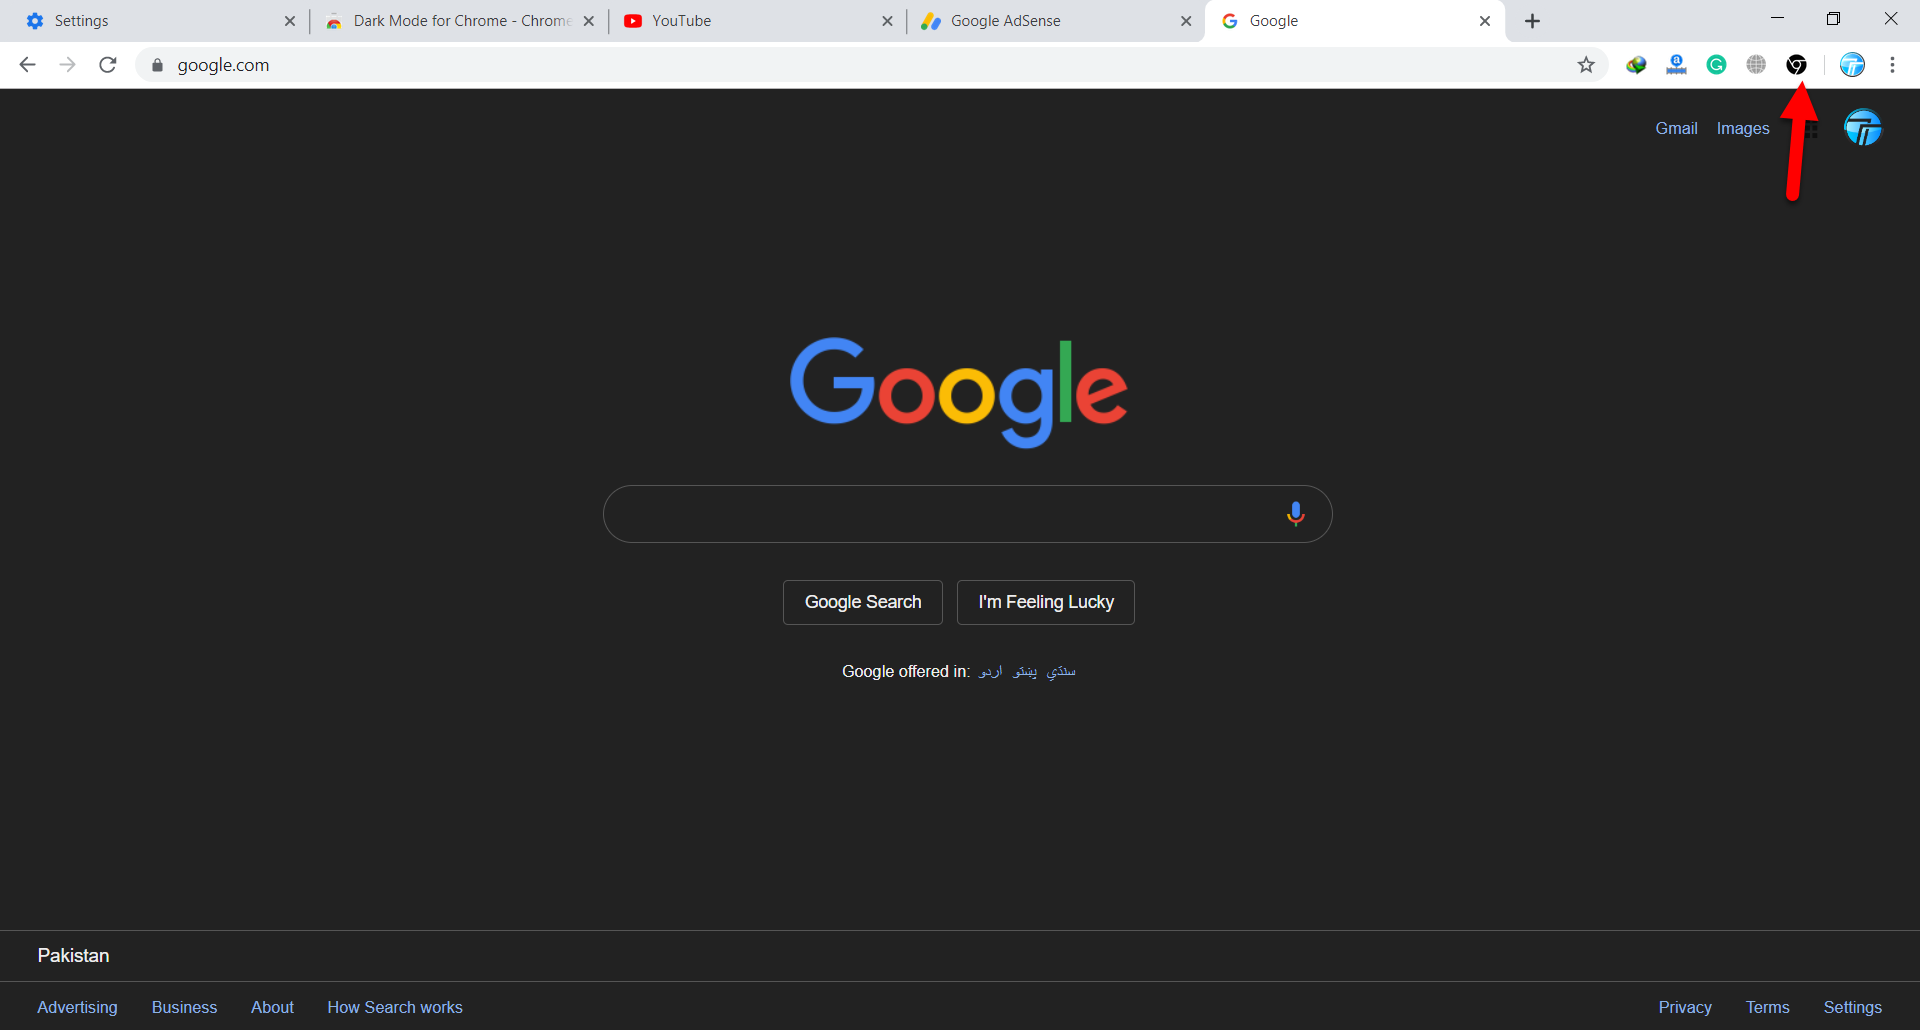 how to dark mode google chrome